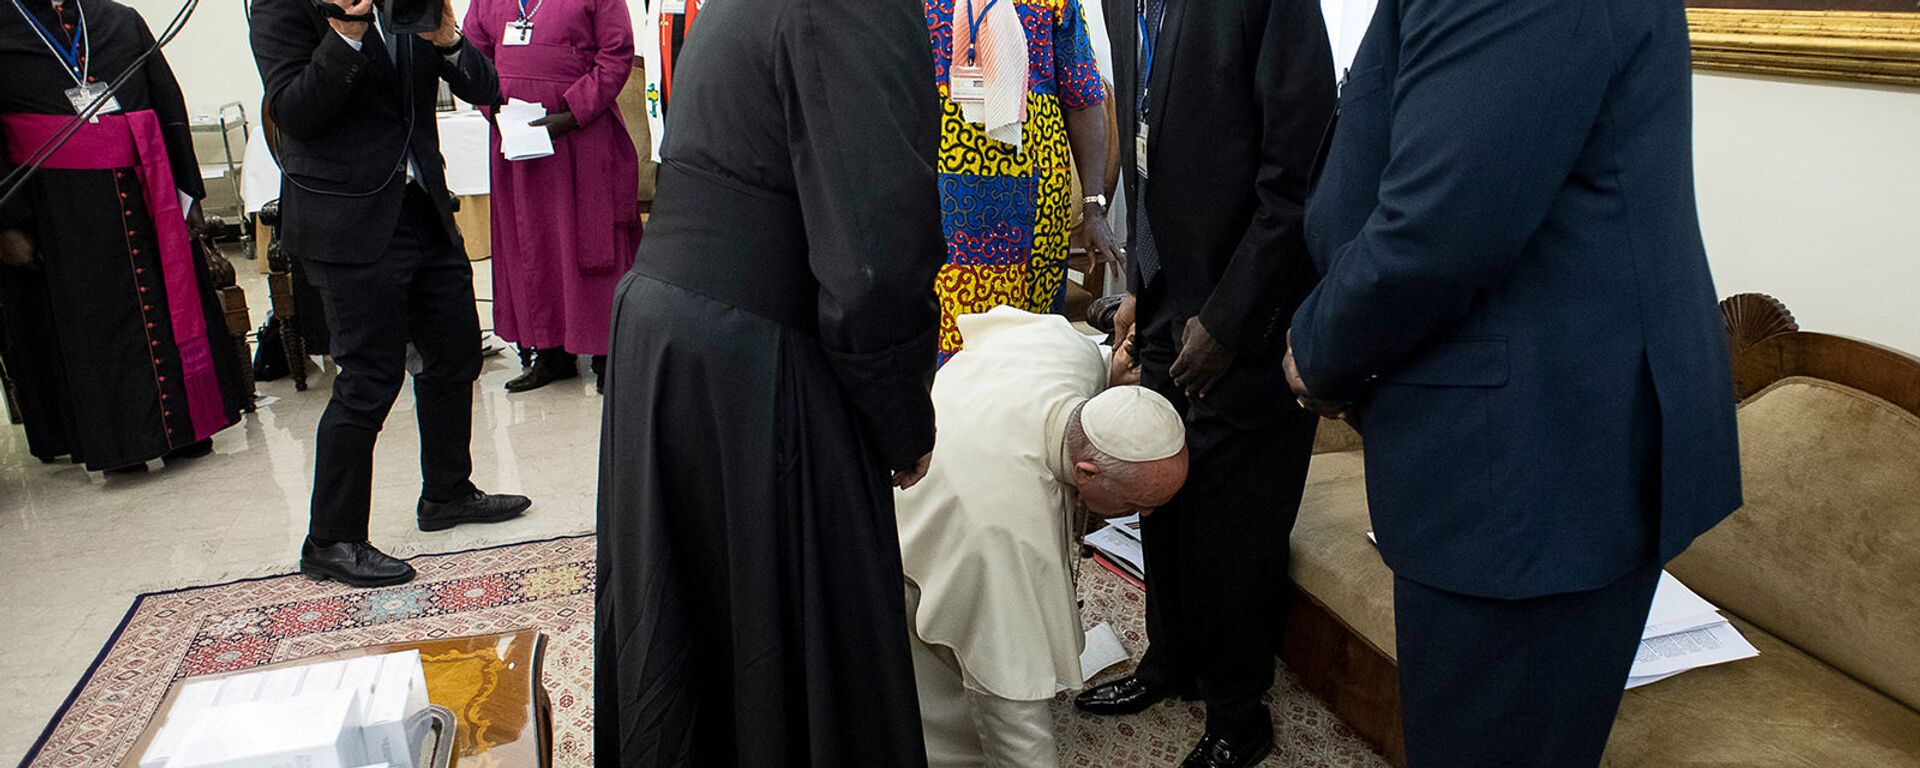 Римский Папа Франциск преклоняет колени, чтобы поцеловать ноги президента Южного Судана Сальвы Киира в конце двухдневного духовного ретрита с лидерами Южного Судана (11 апреля 2019). Ватикан - Sputnik Արմենիա, 1920, 12.04.2019